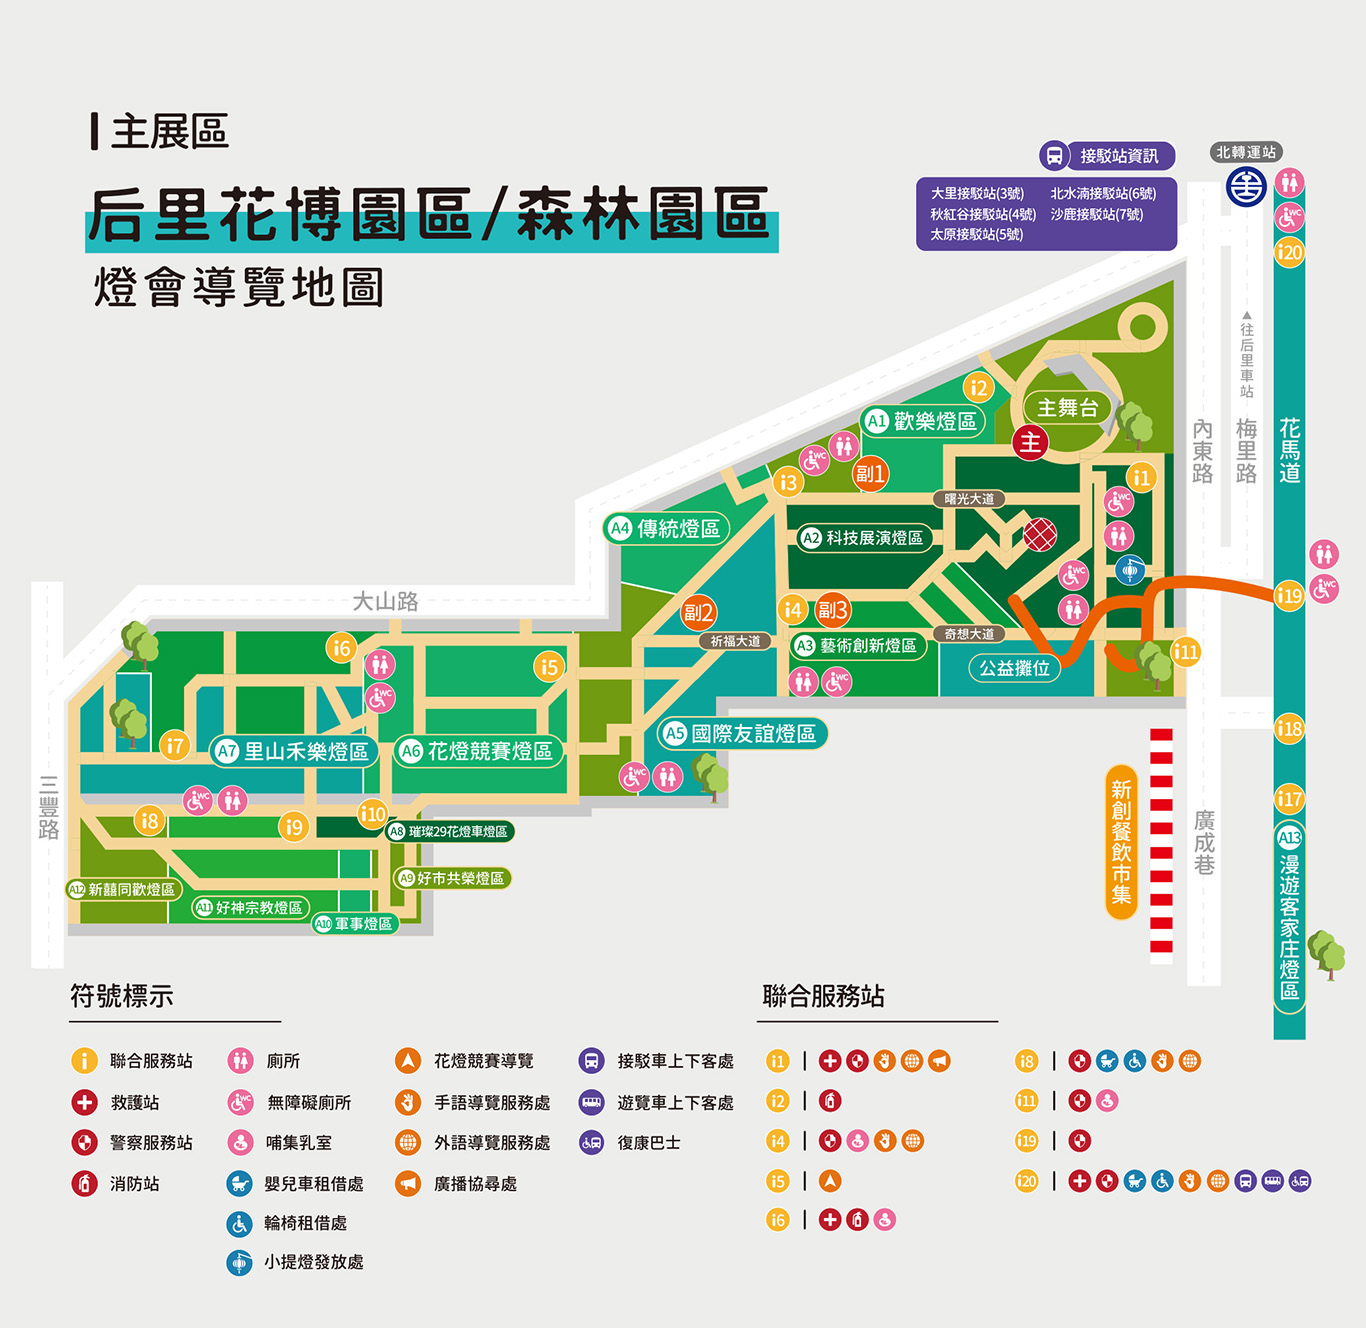 2020台灣燈會攻略 | 台中后里森林園區、馬場園區 主燈、活動時間、交通懶人包 (影片)